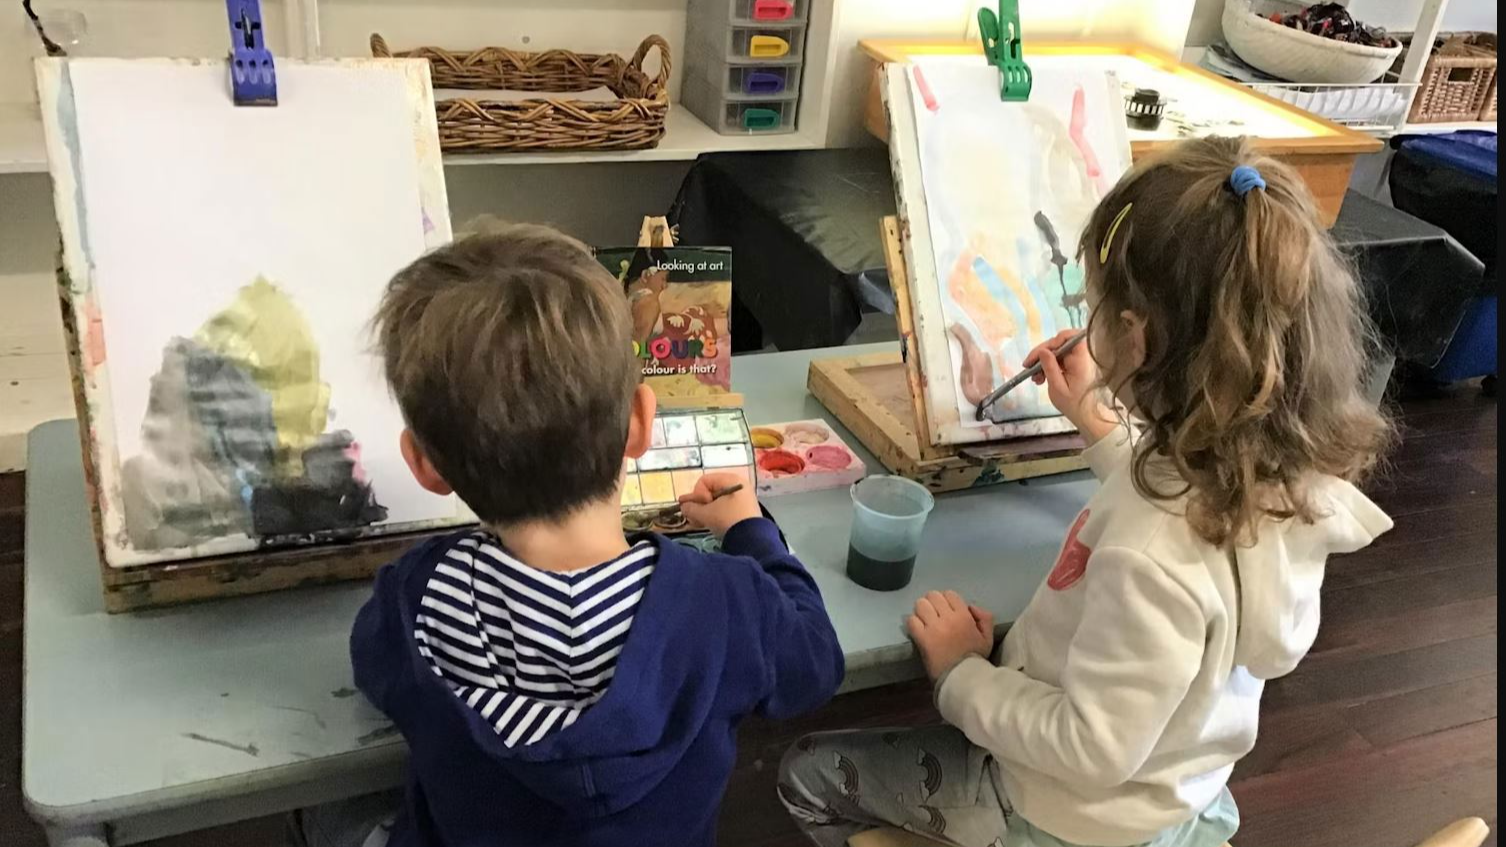 Kindergarten/Preschool Programs